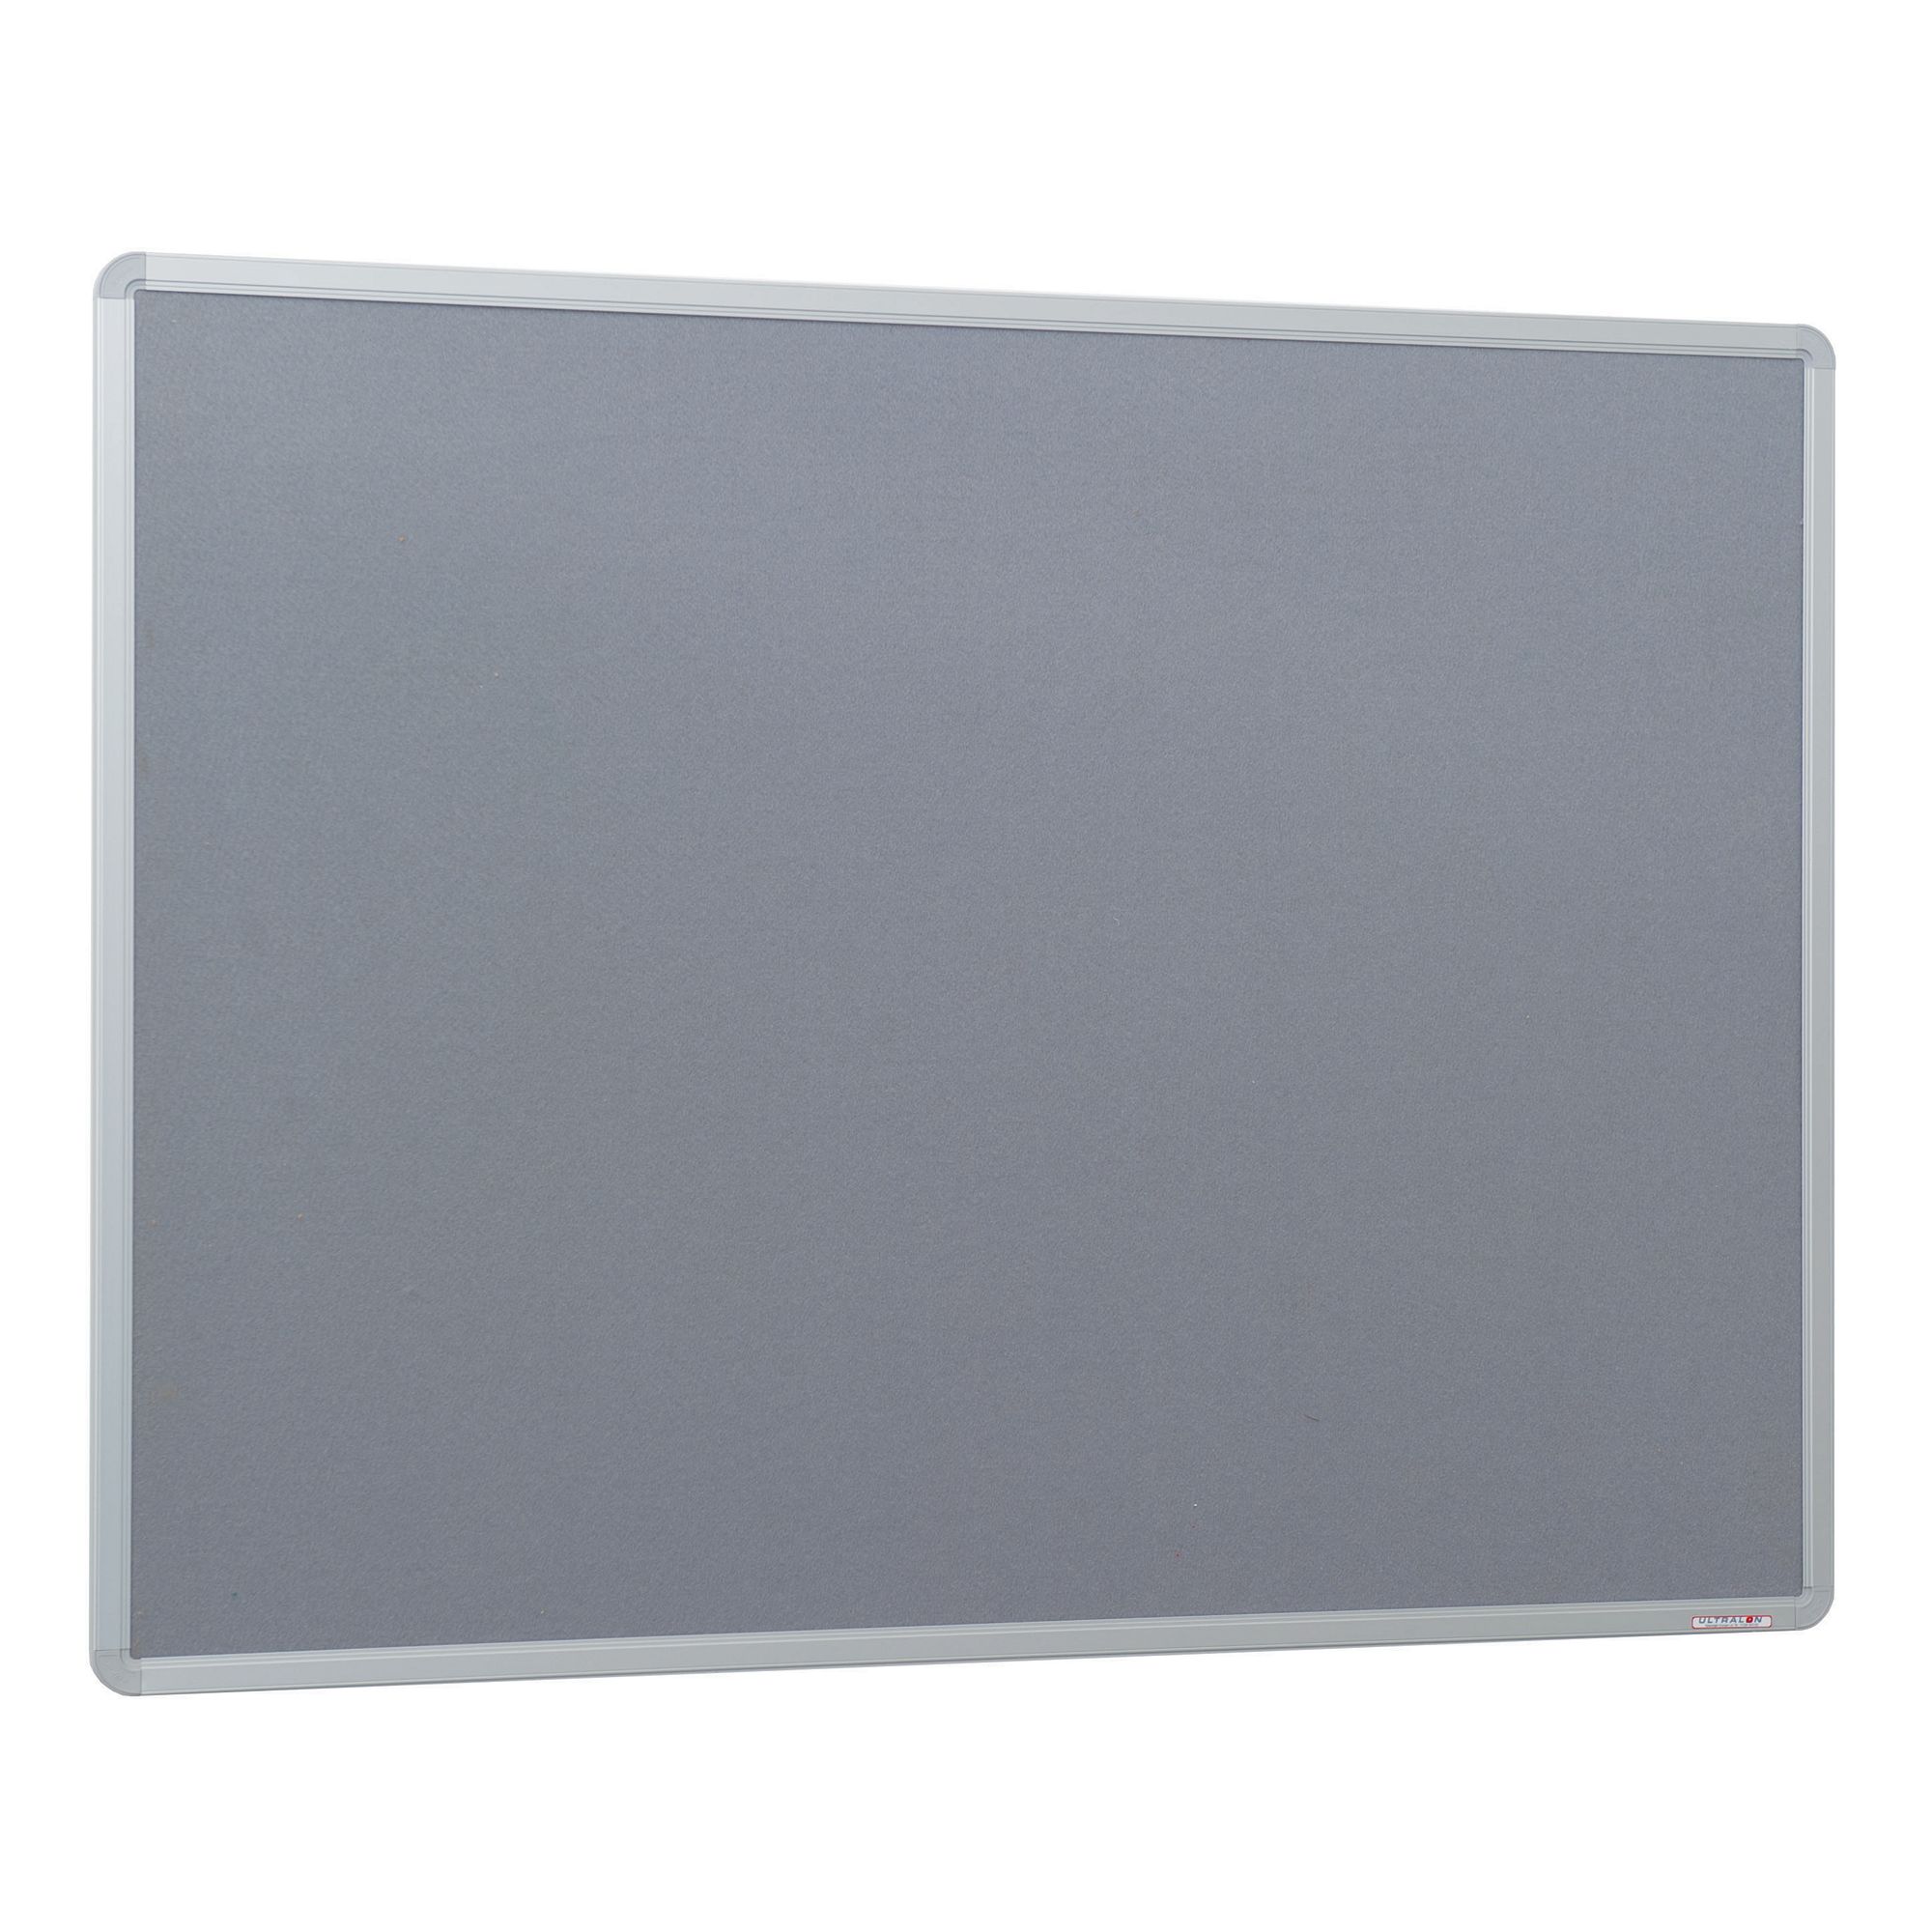 Alum Noticeboard 9x6 Grey